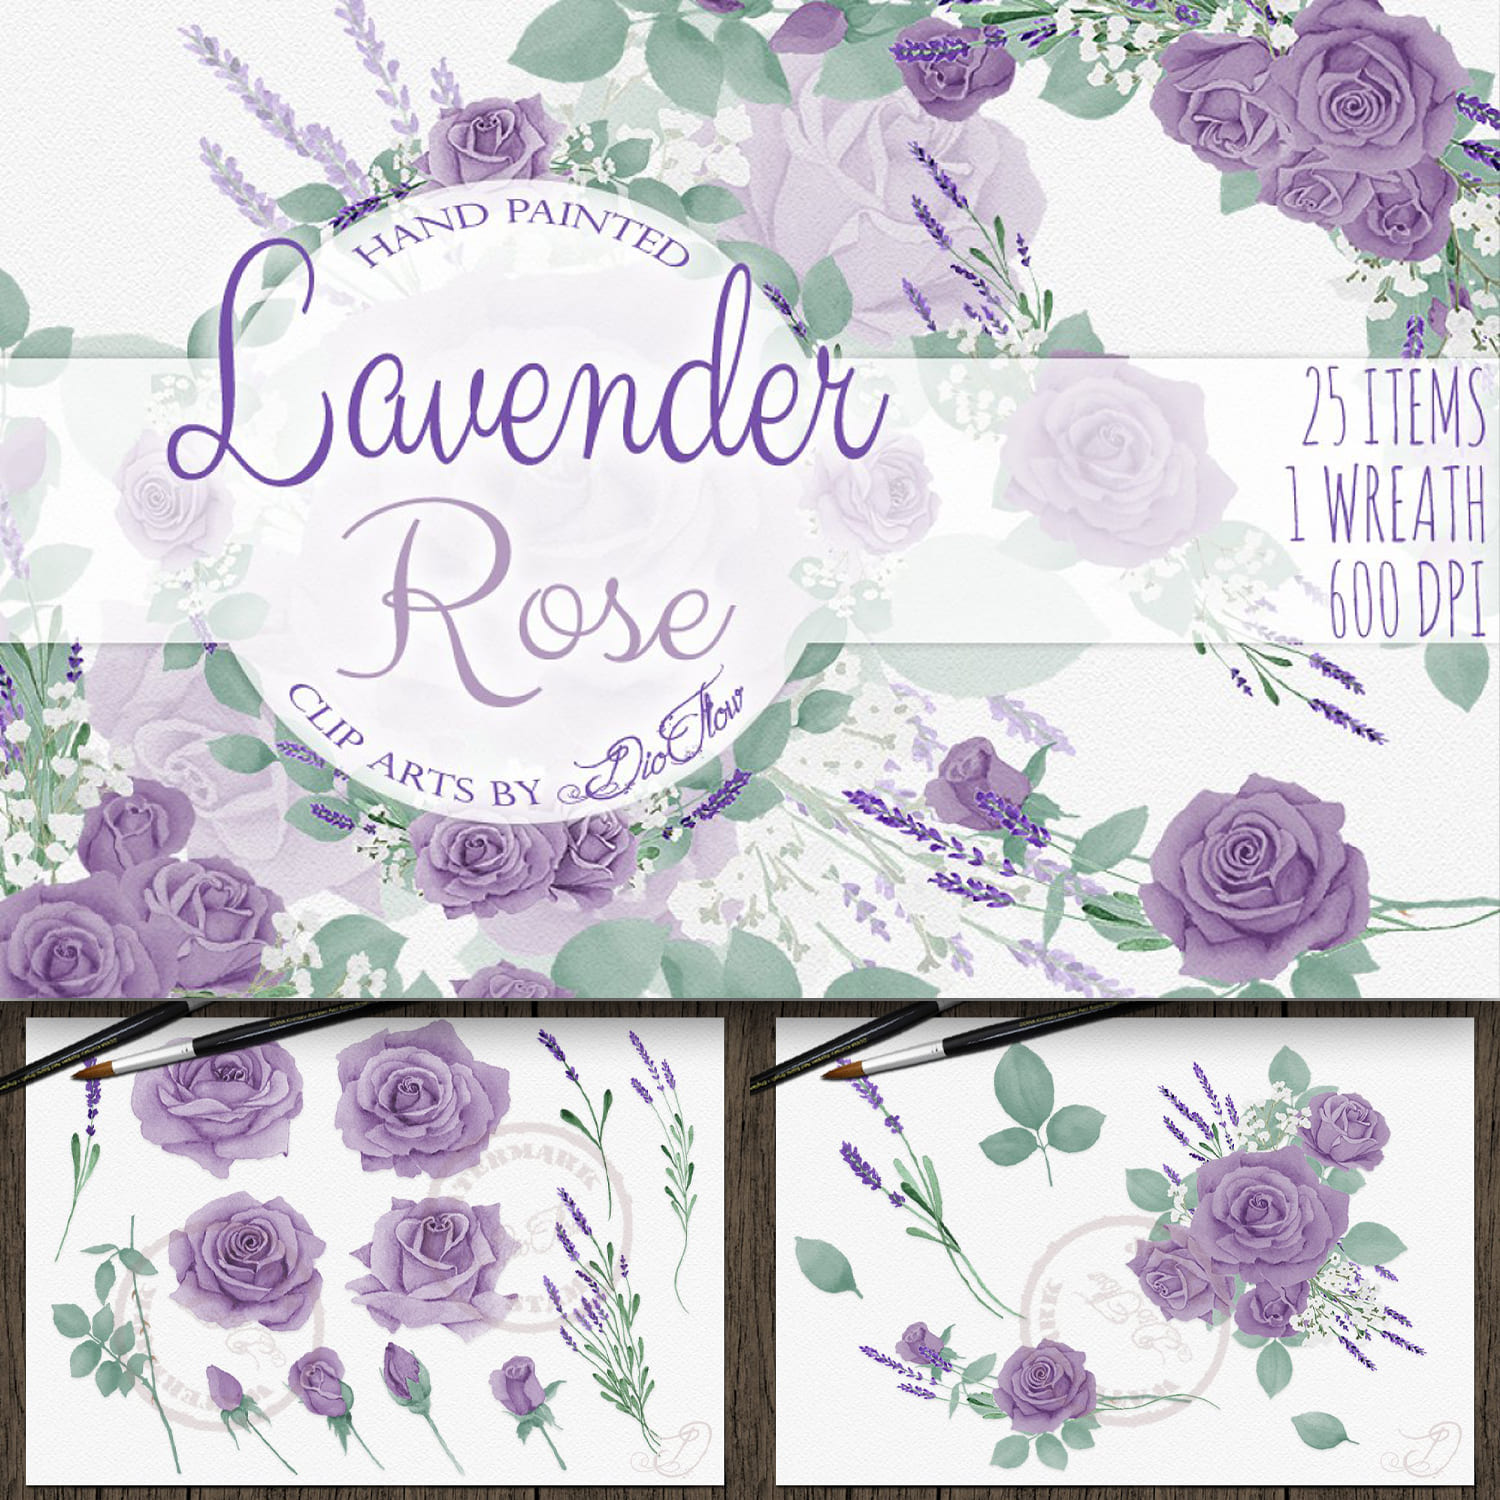 Lavender Rose Illustration cover.